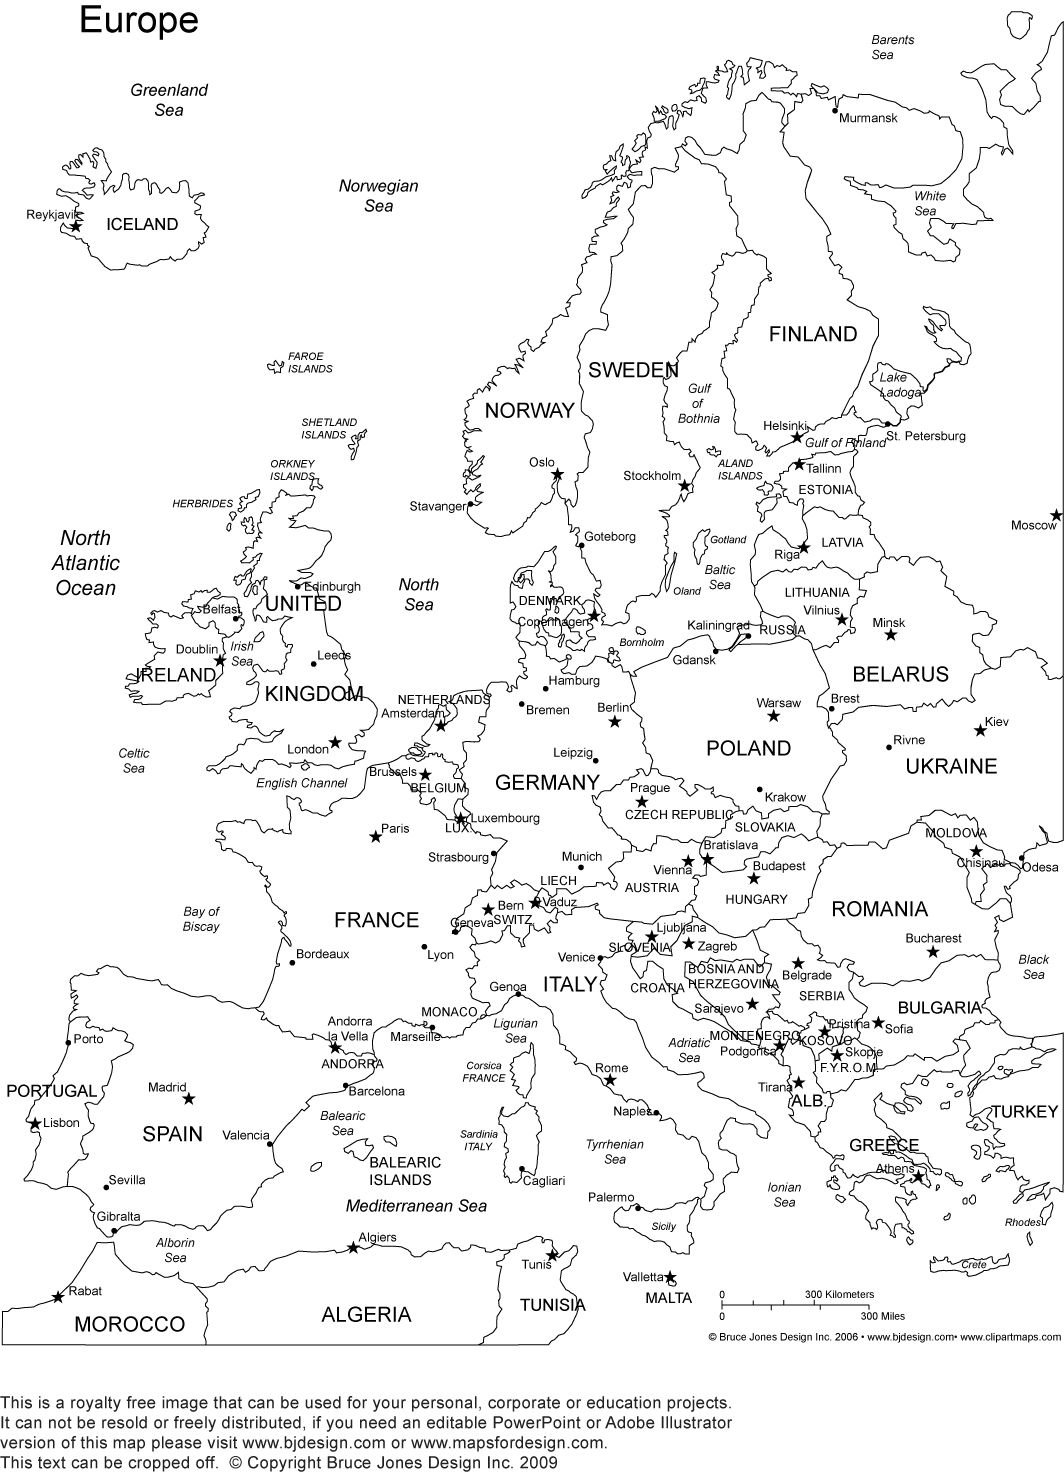 world-war-ii-europe-map-worksheet-answer-key-uploadled